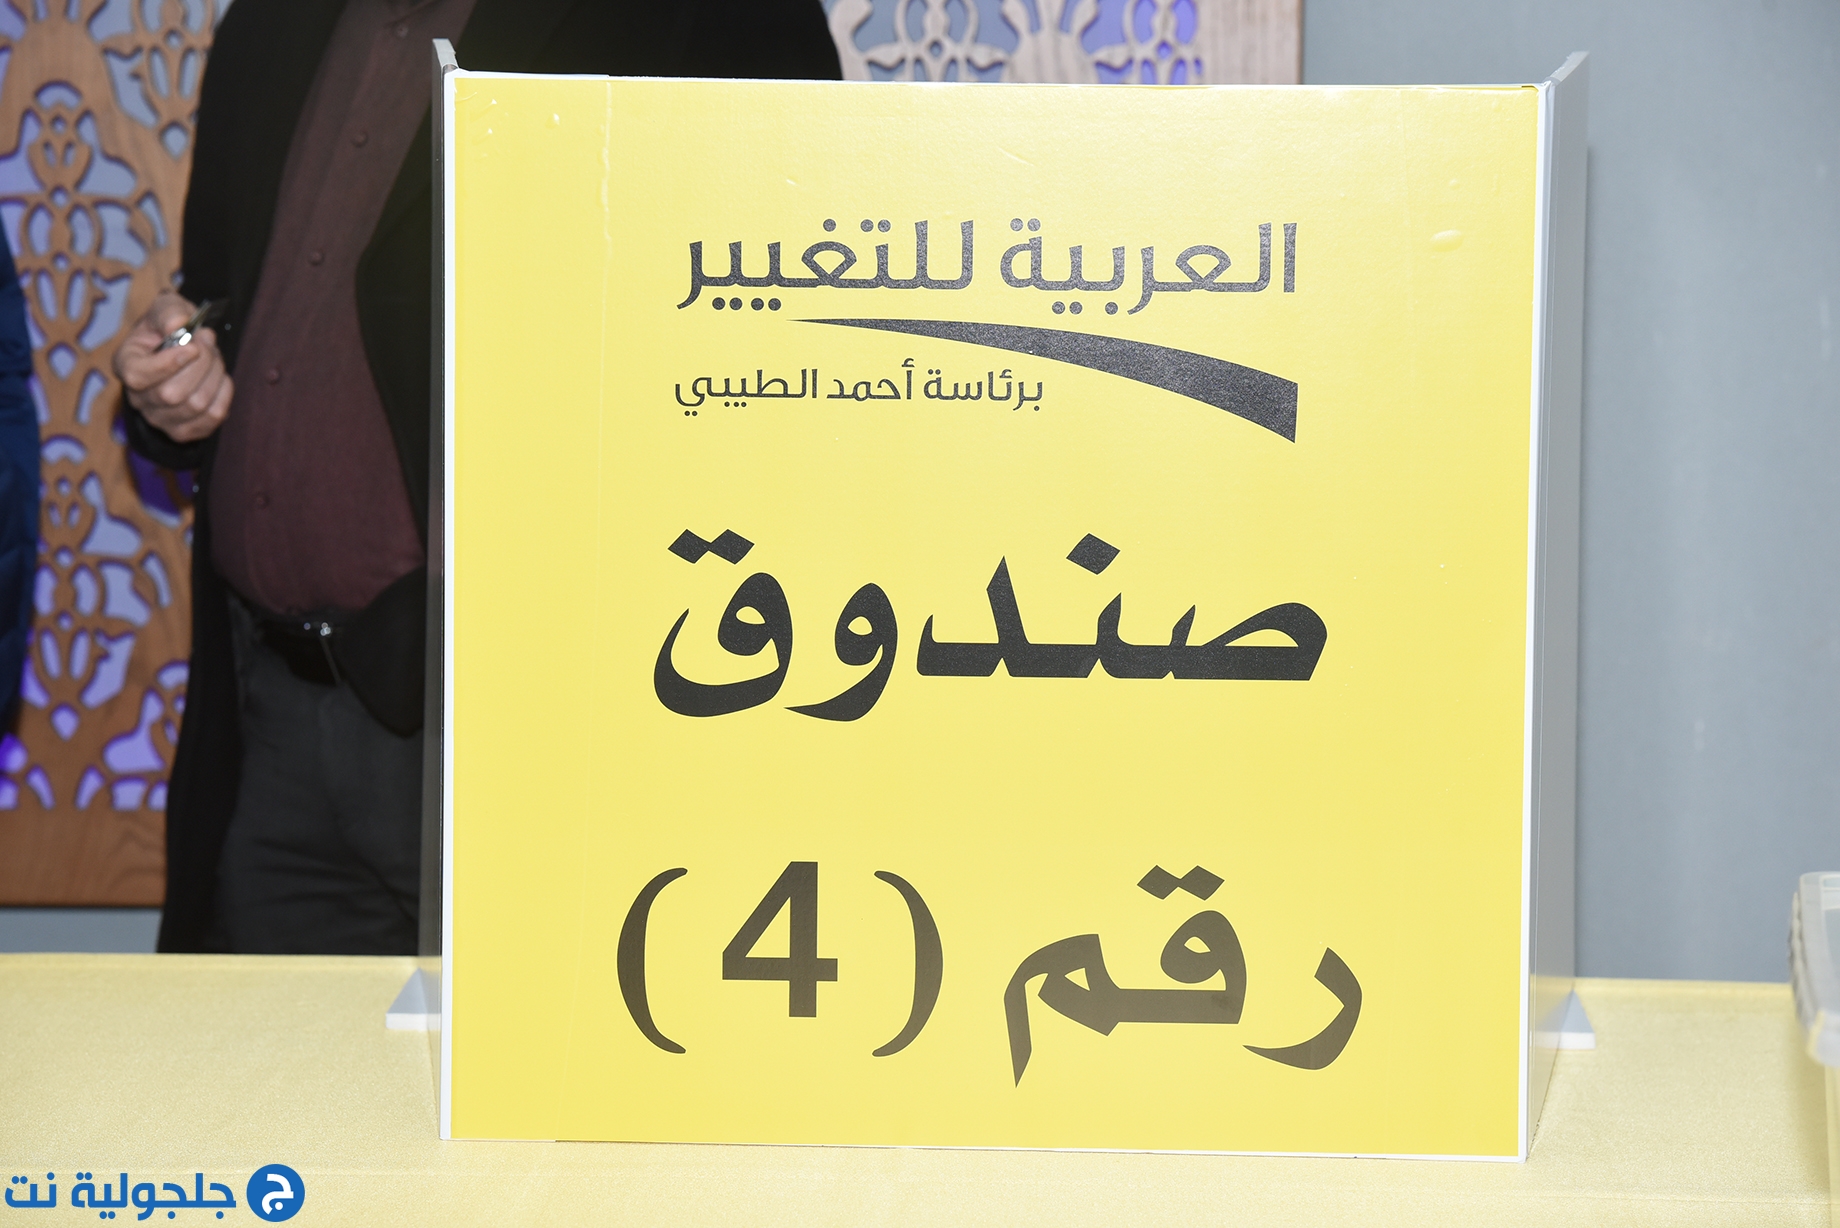 العربية للتغيير تنتخب 12 مرشحا في القائمة لانتخابات الكنيست